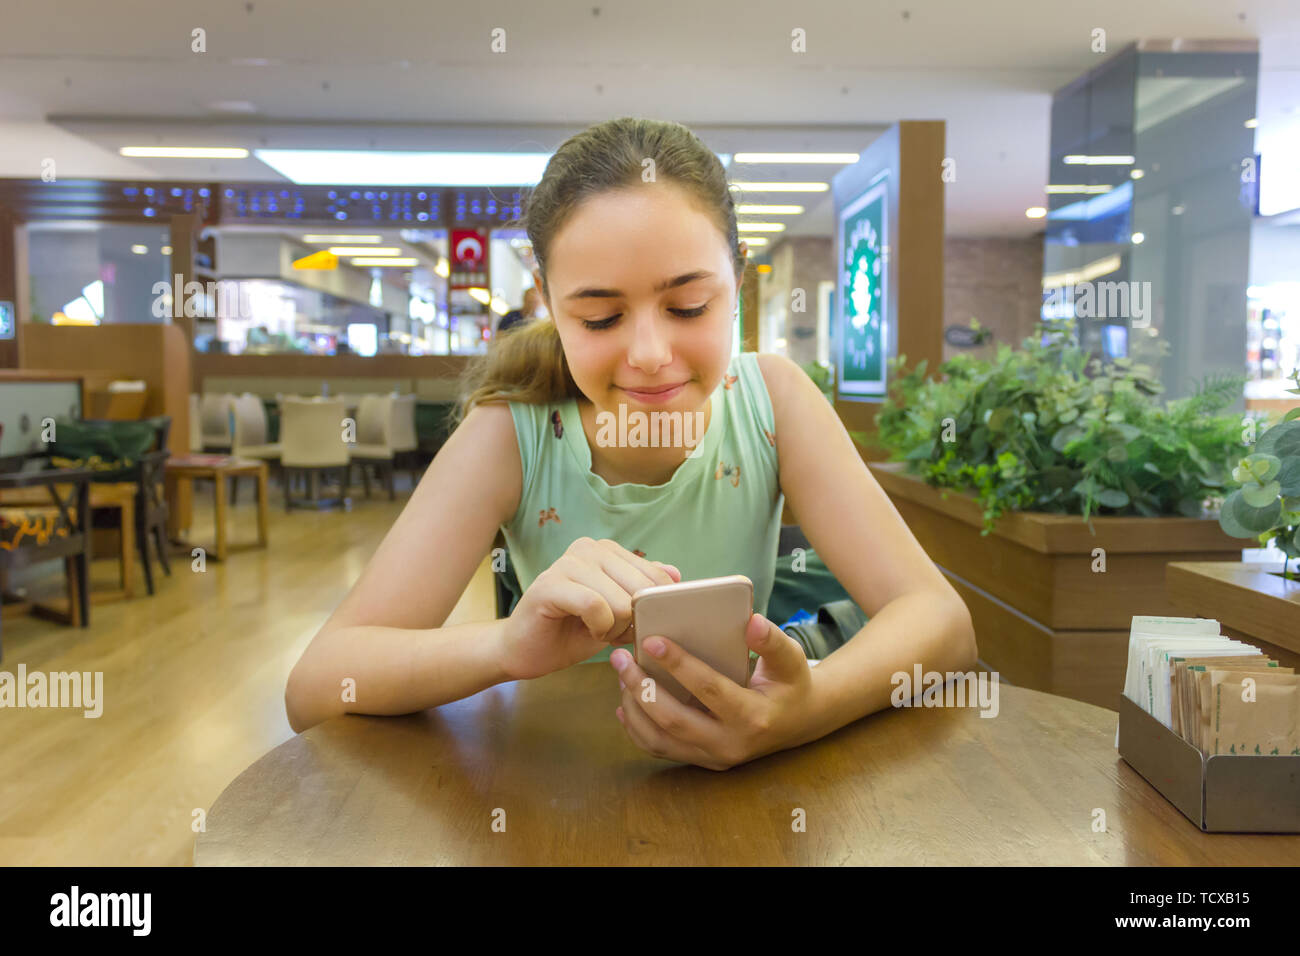 Junge schöne jugendlich Mädchen beobachten lustige Videos auf dem Smartphone im Cafe in der Mall Stockfoto